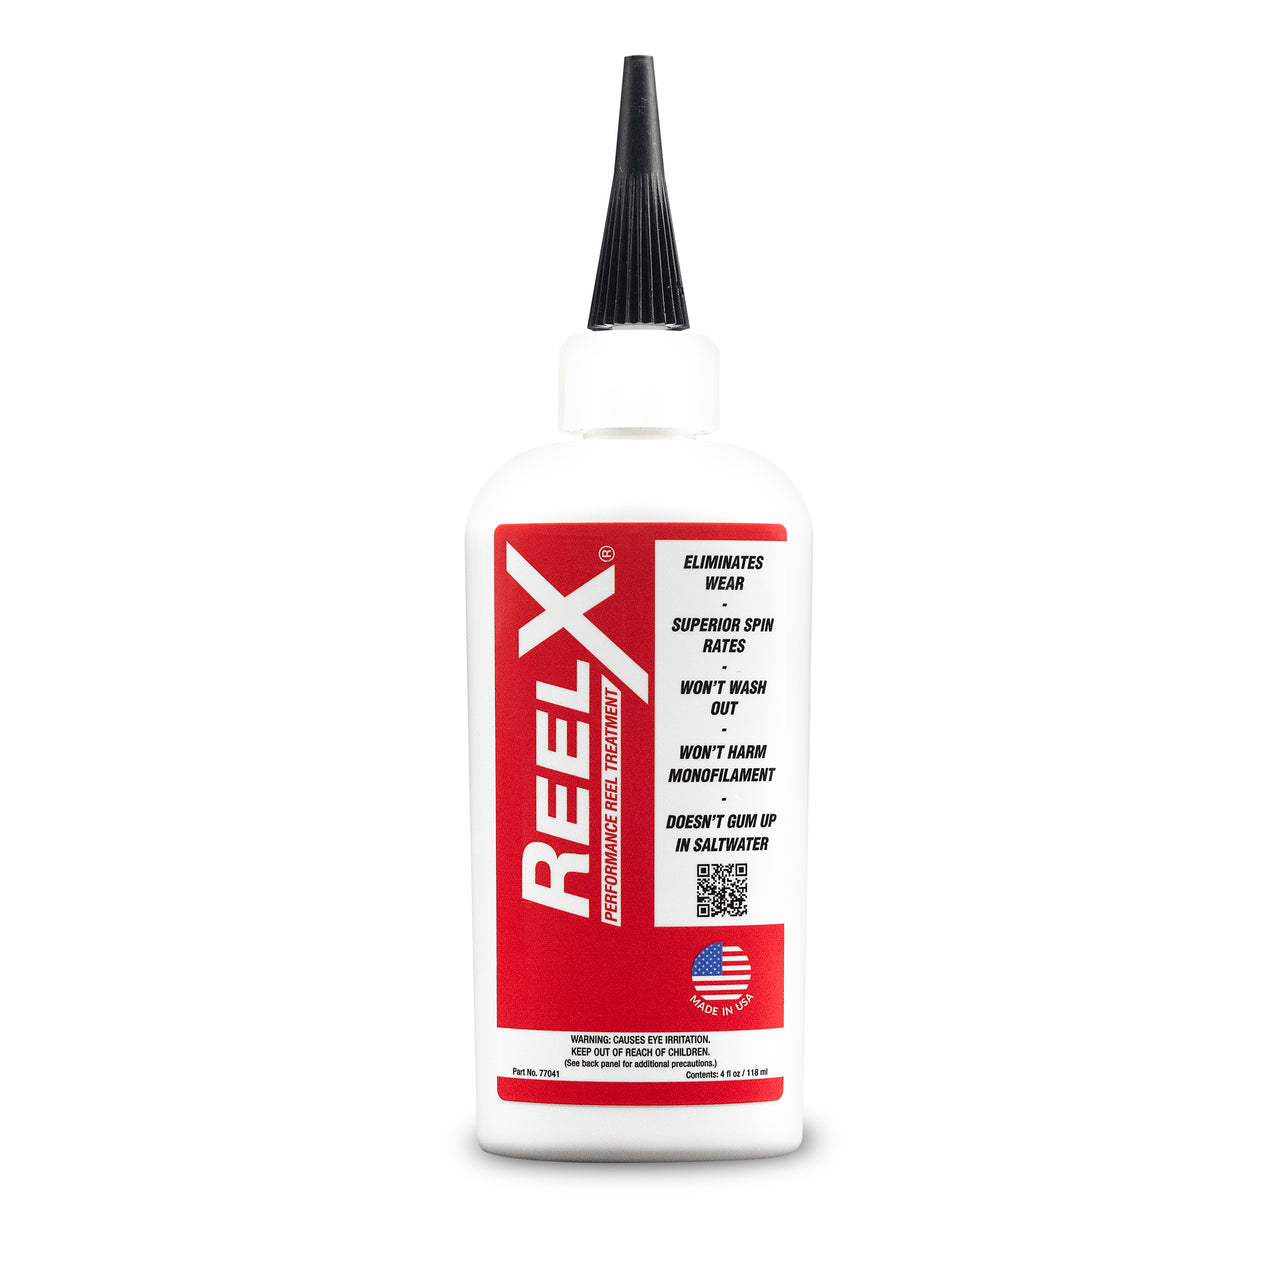 ReelX ultimate fishing reel lubricant